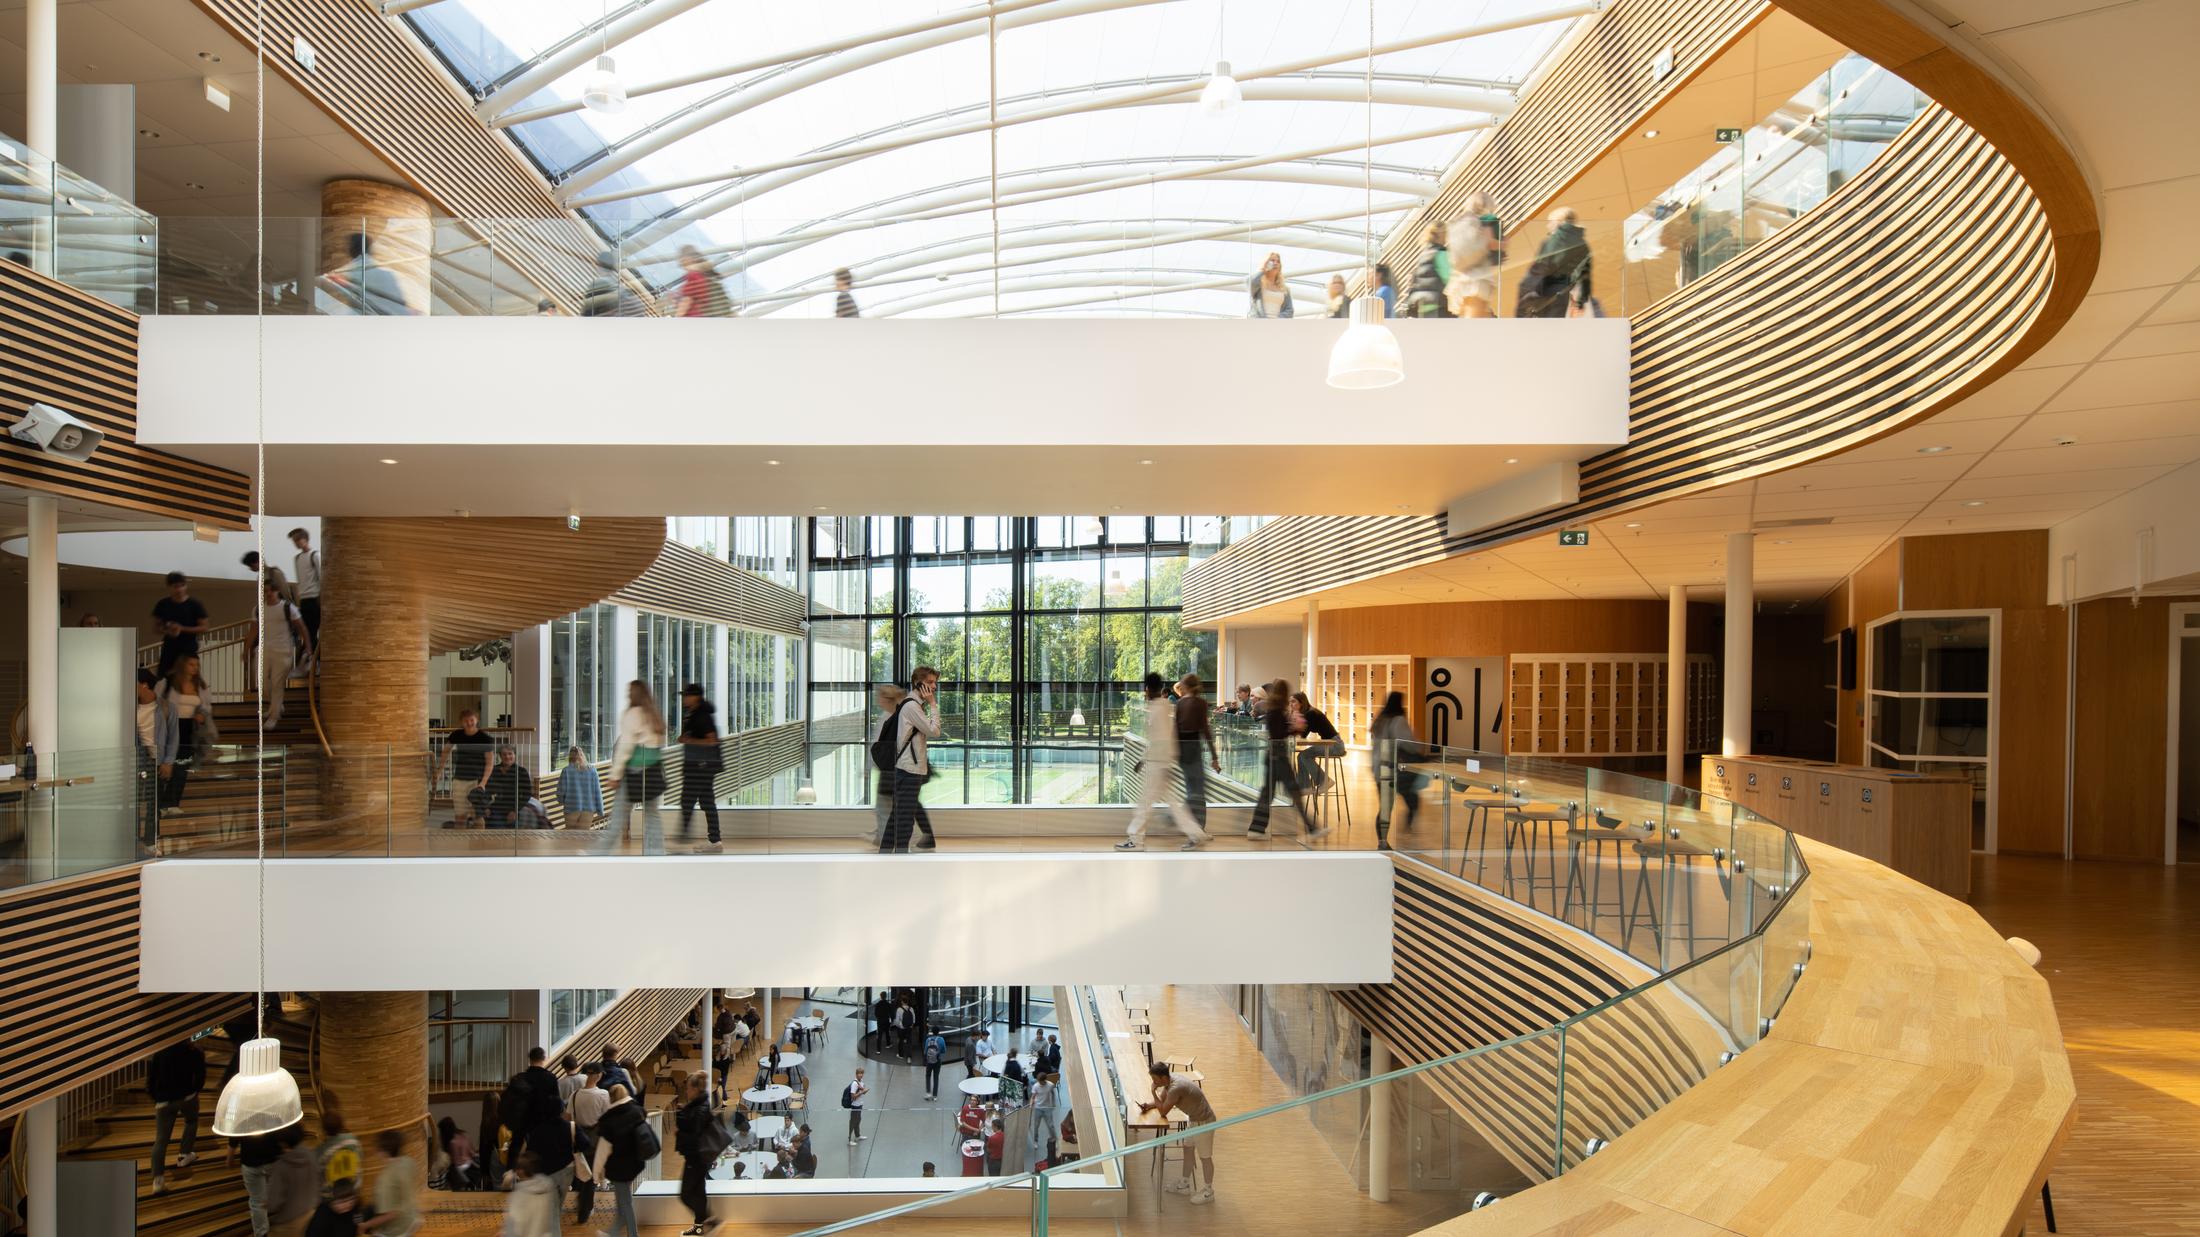 Oversiktsbilde over tre etasjer på skole med treverk og spiler, En trapp i massivtre. Elever i bevegelse. Foto